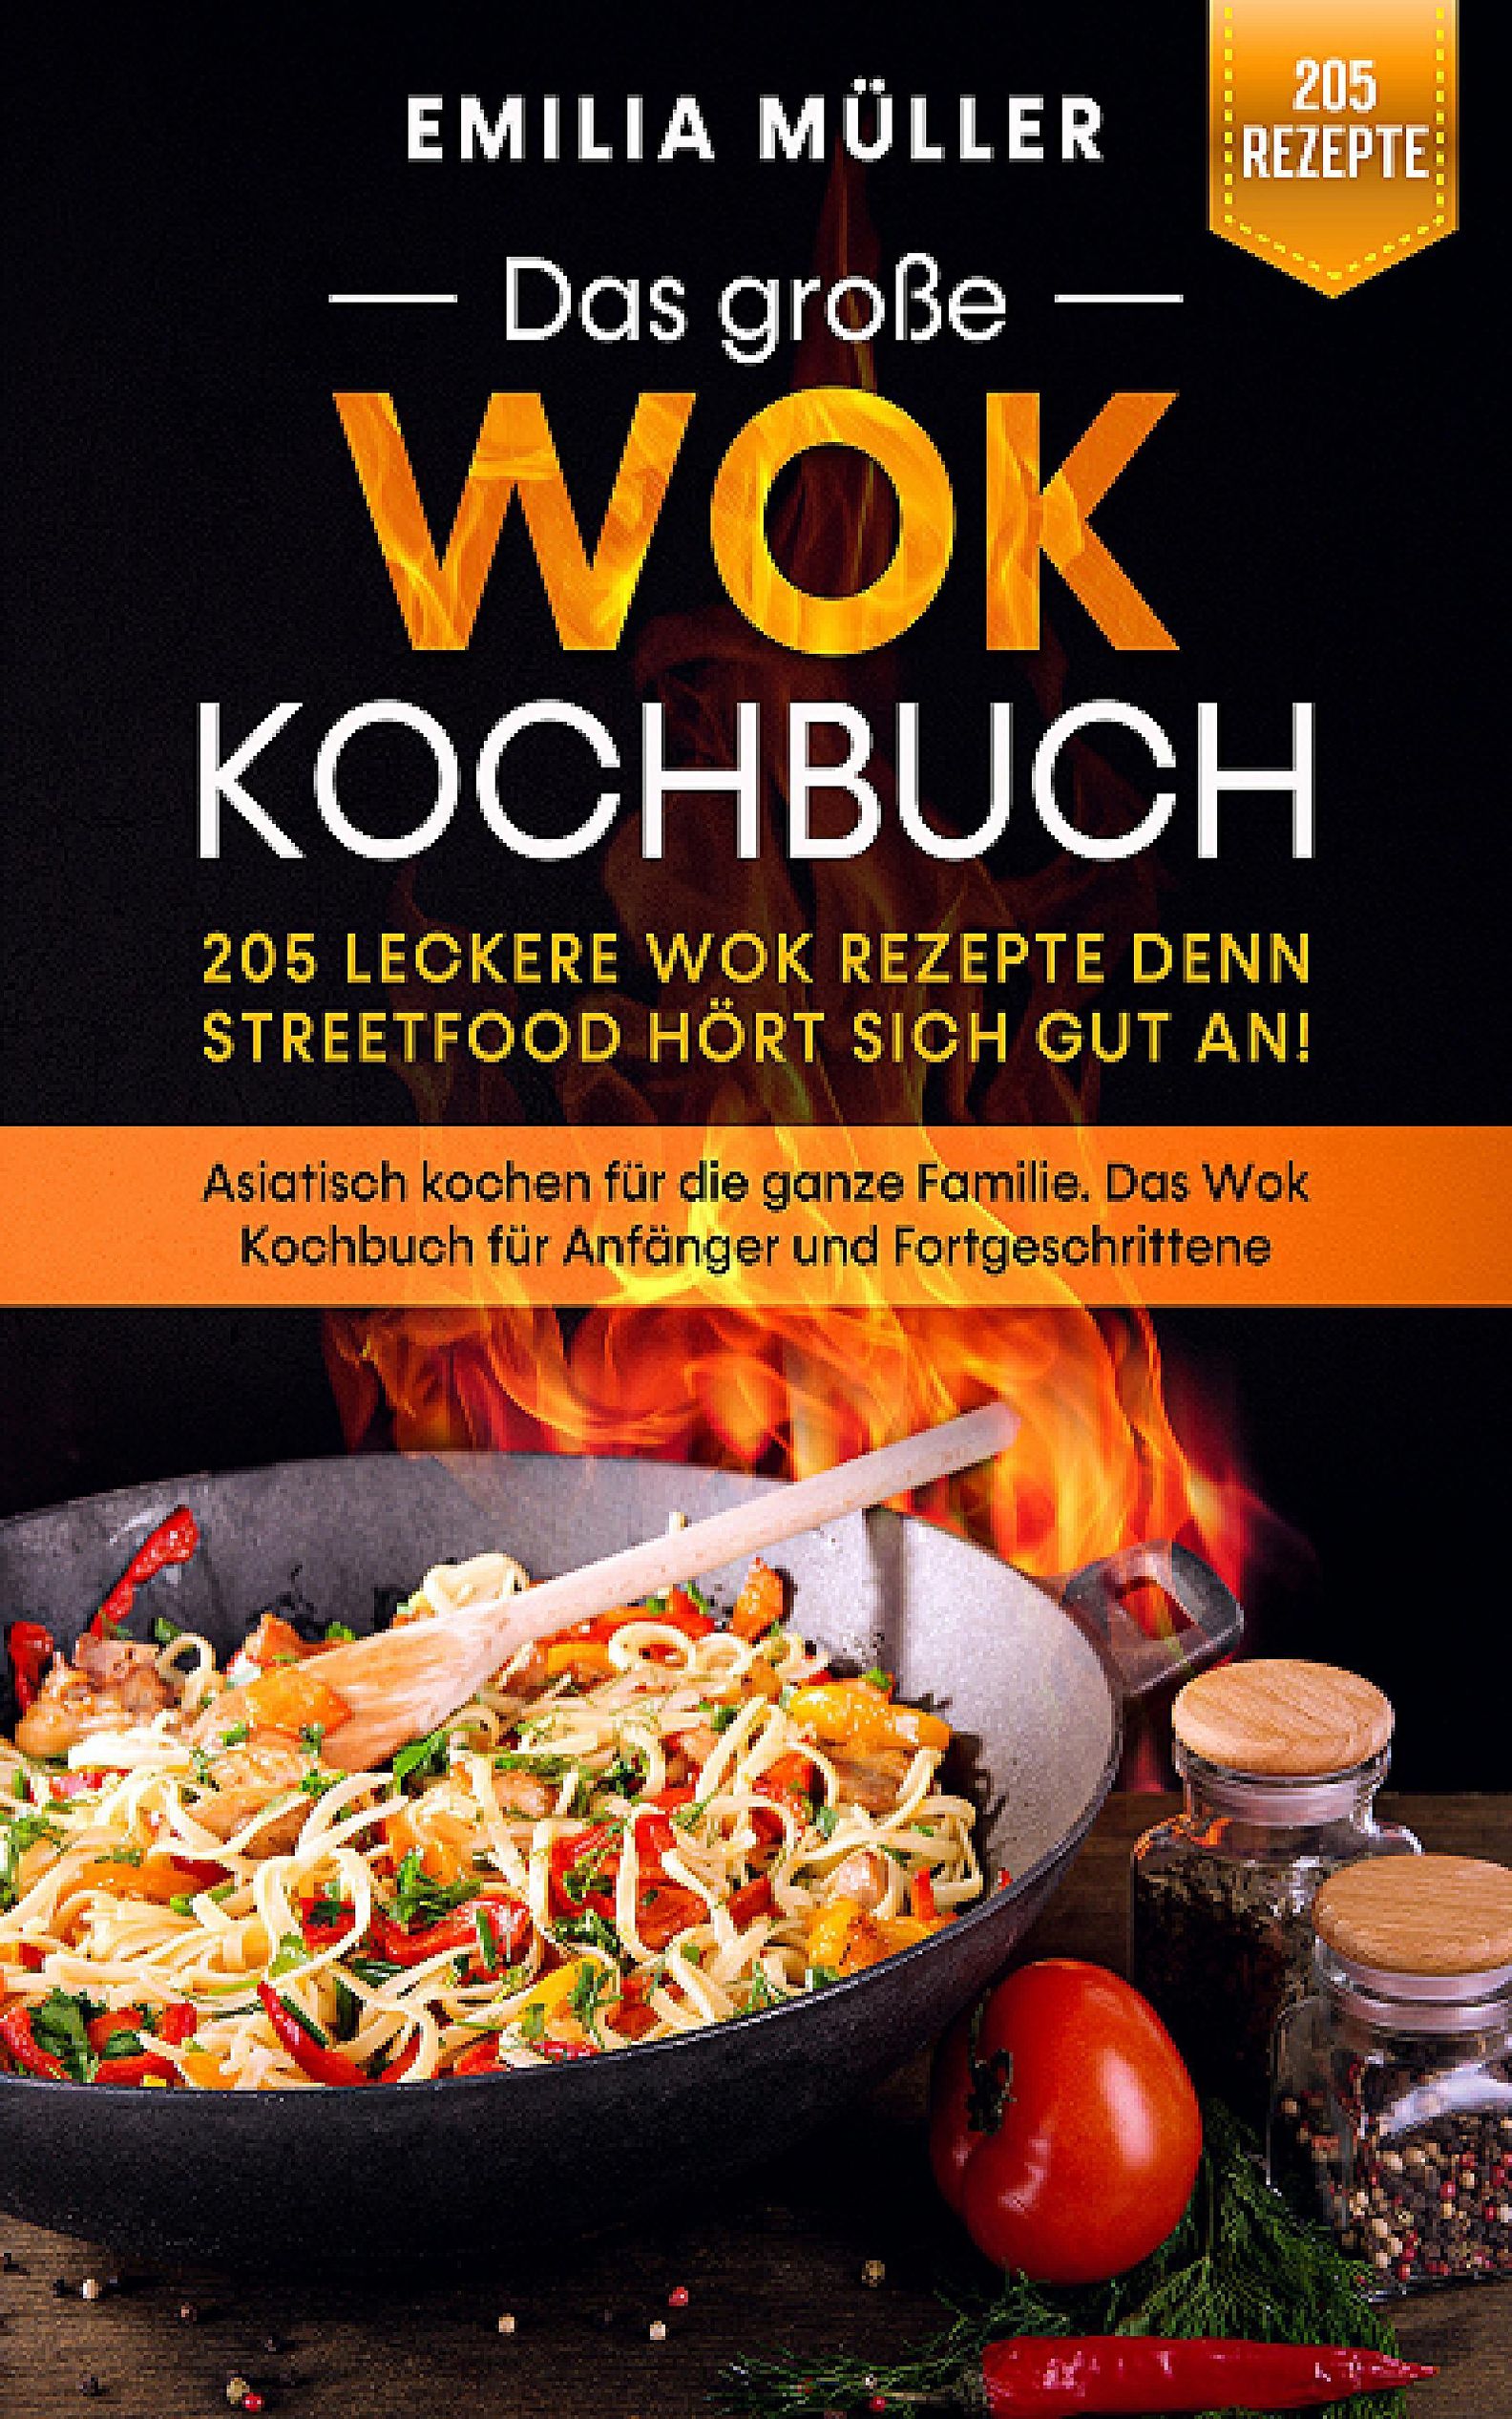 Das grosse Wok Kochbuch - 205 leckere Wok Rezepte eBook v. Emilia Müller |  Weltbild